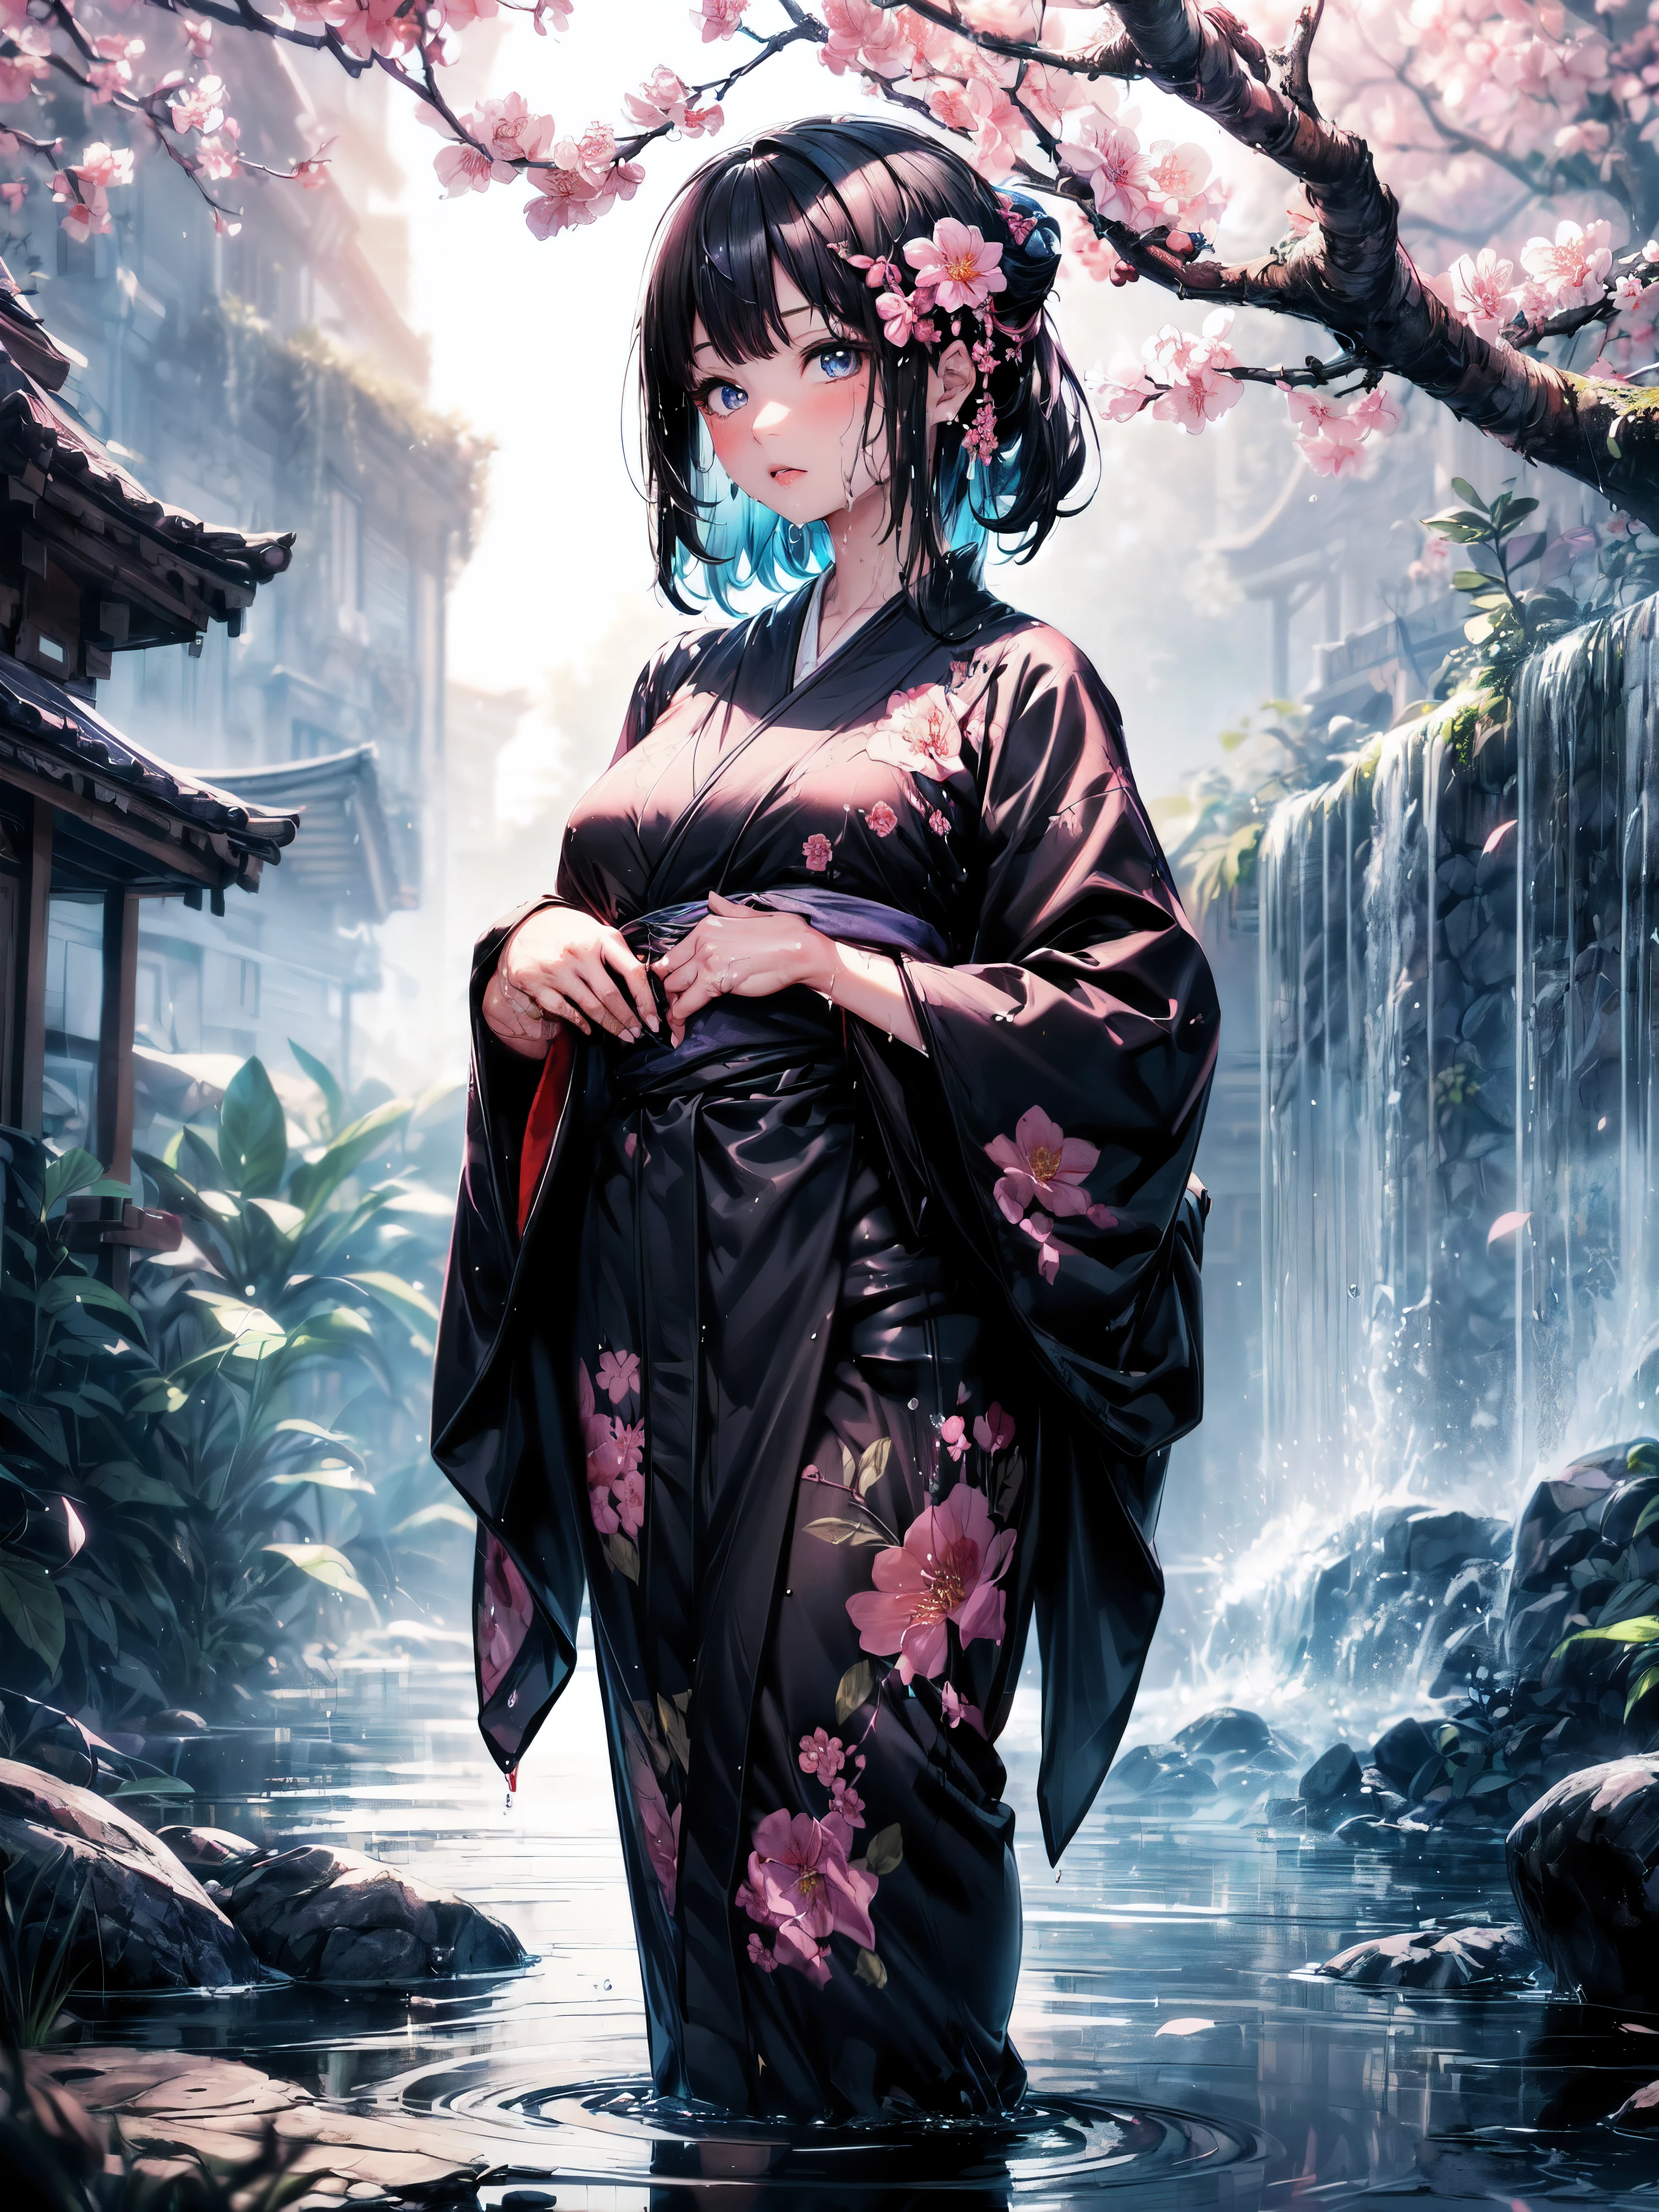 (Une fillette de 7 ans:1.2), (Très jeune petite fille), changement, (seulement), (petite poitrine), (grand angle), photo brute, Esthétique, Convoluté, Récompensé, clair-obscur, Meilleure qualité, contexte détaillé, (atmosphère brumeuse:1.2), (dure journée de pluie:1.1),((Fille en kimono de coton noir:1.2)), grand kimono en coton noir, grand kimono noir avec une texture en coton, très longue manche kimono noire, meilleures rides, De vraies rides, Meilleures ombres, (mouillé, mouillé body, mouillé hair, mouillé skin, very mouillé black kimono, reflection on the mouillé kimono, broderie délicate de fleurs de cerisier, de subtiles gouttelettes d&#39;eau:1.15), (pulvérisateur d&#39;eau:1.1), (Kimono en tissu, meilleure ride de kimono, Enveloppement de mucus transparent), (Parcourez le (Brume sombre Jardin Zen)), (emplacement réel), yeux délicats et beaux, Pose décontractée, Textures détaillées, posant, (corps anatomiquement correct, Visage détaillé, (kimono aux textures très détaillées avec motif floral), (cheveux noirs), cheveux volumineux, ornement de cheveux, Couleurs vives, Expression calme, regarde le spectateur, paysage paisible, sensation de propreté et de fraîcheur, De l’eau belle et détaillée